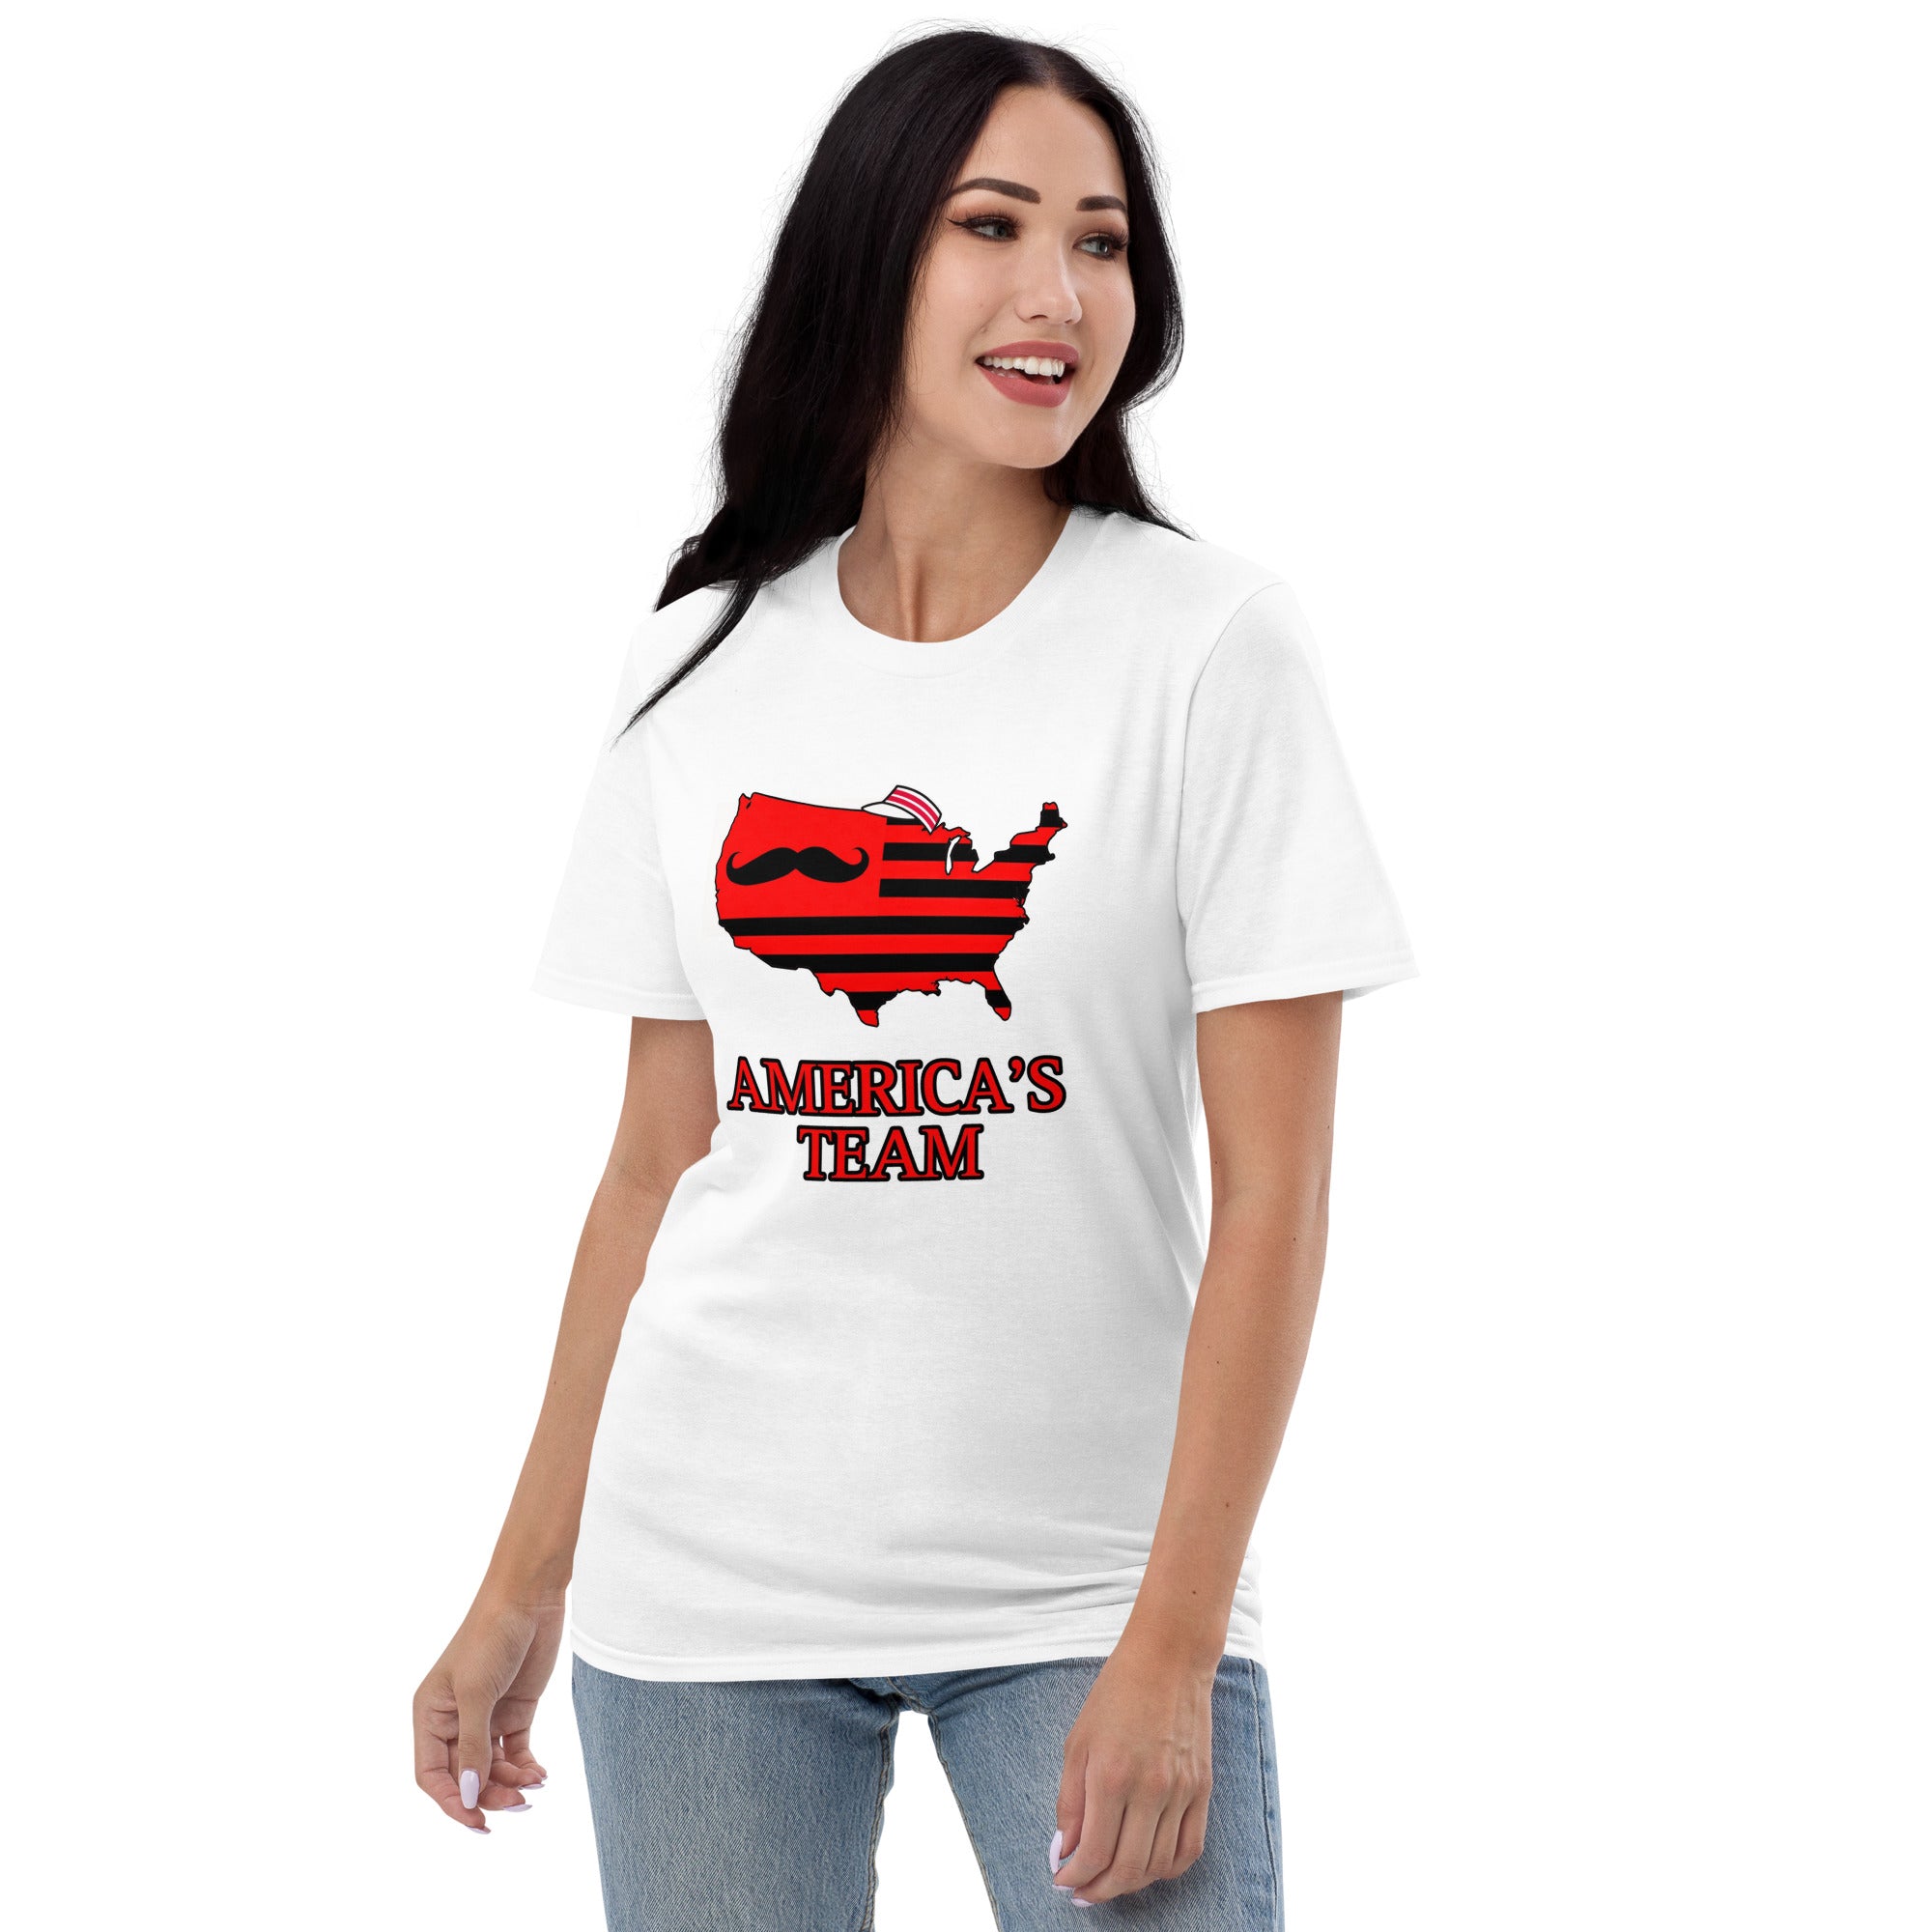 America's Team T-Shirt (Reds)